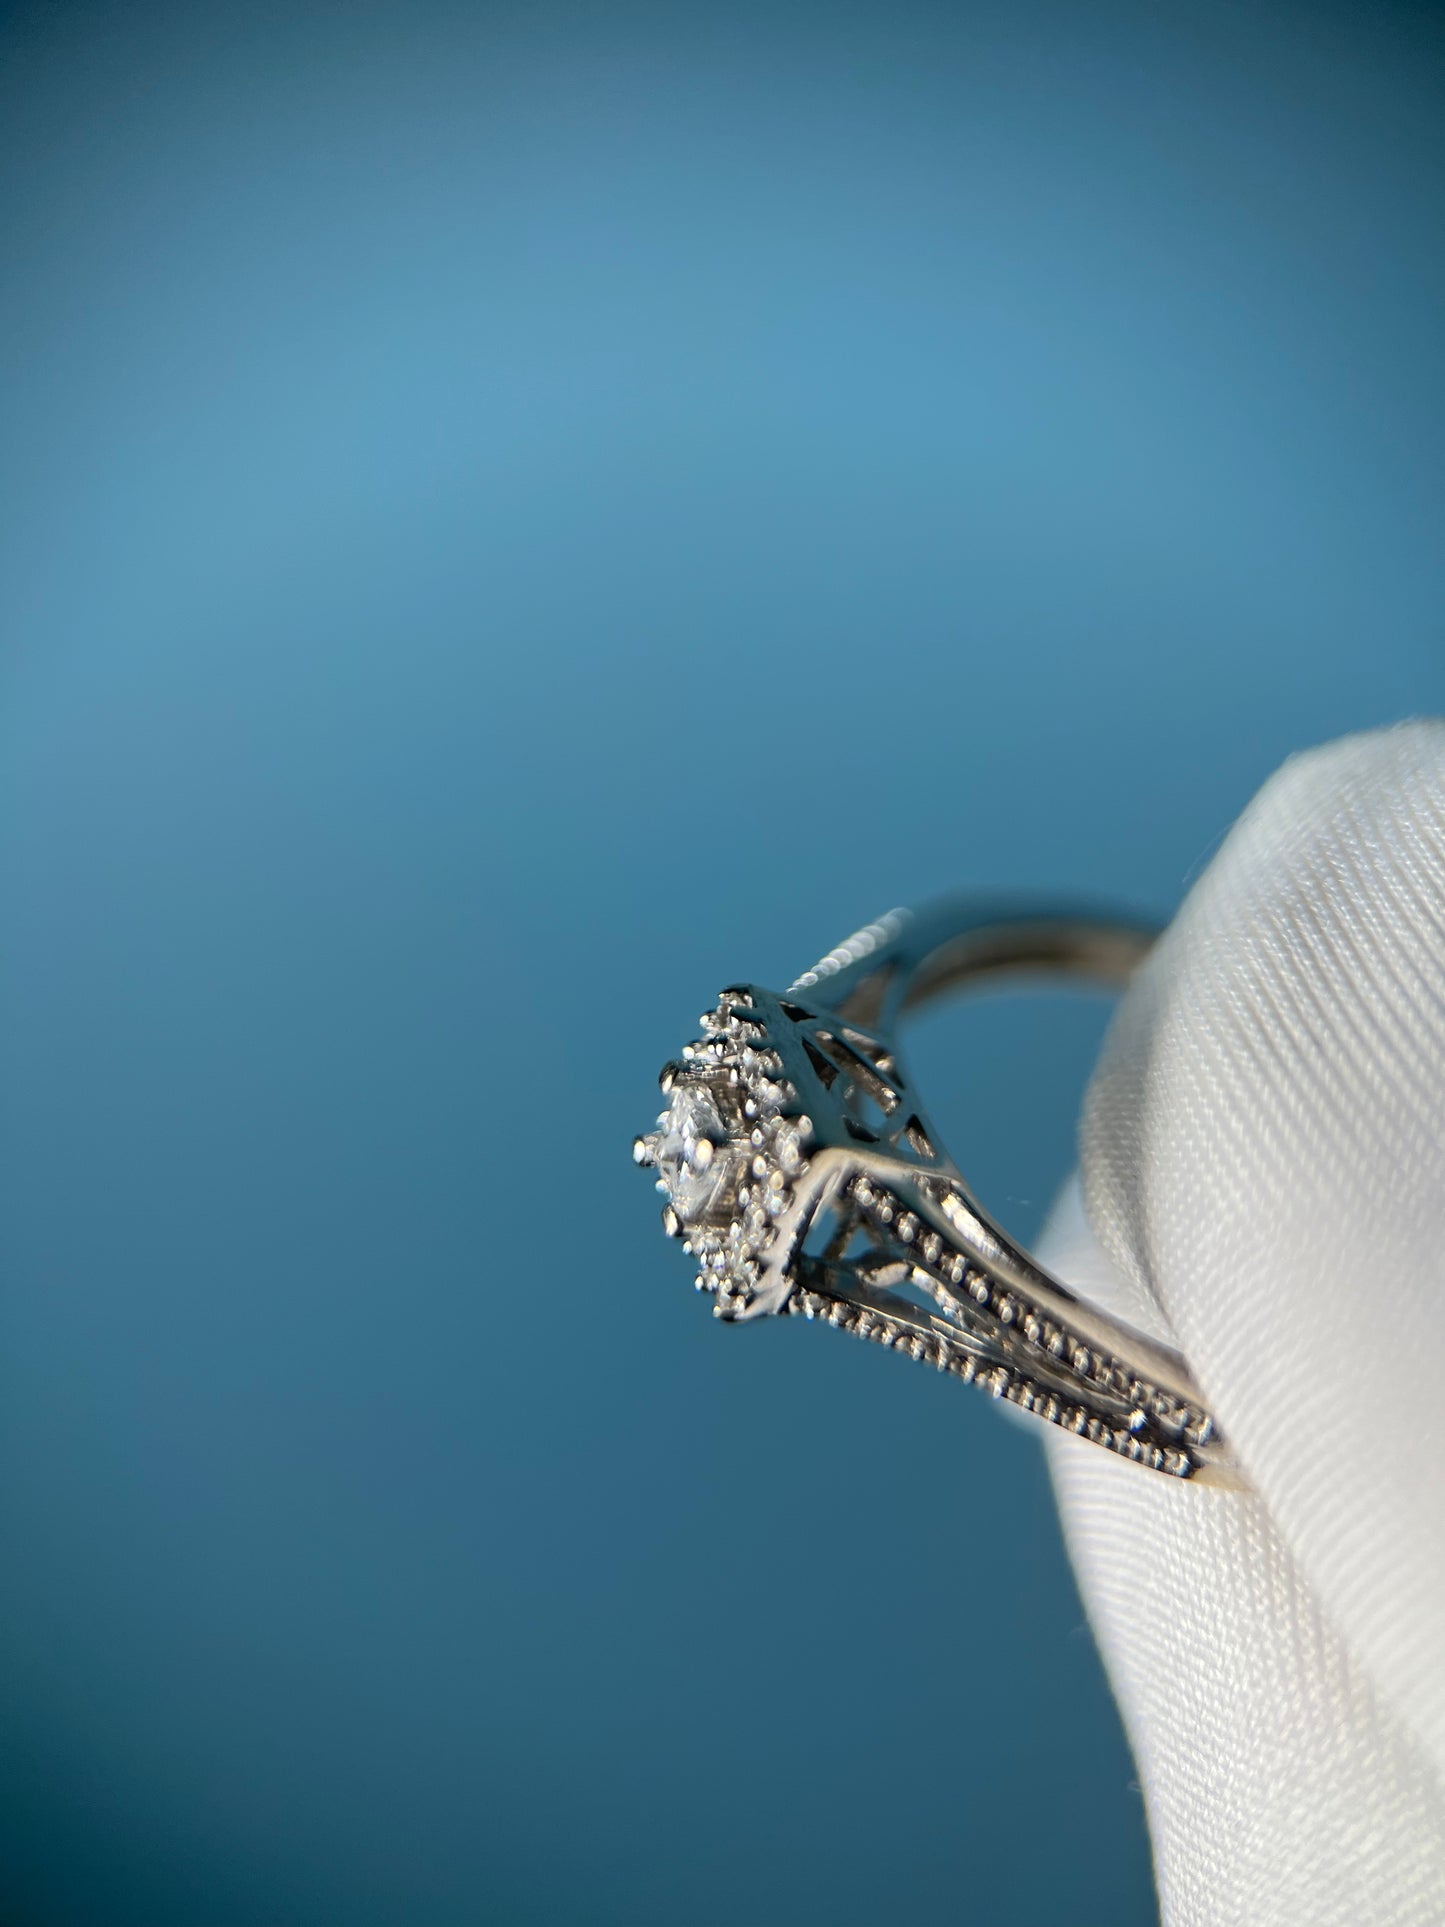 Diamond Promise Ring in 10k White Gold